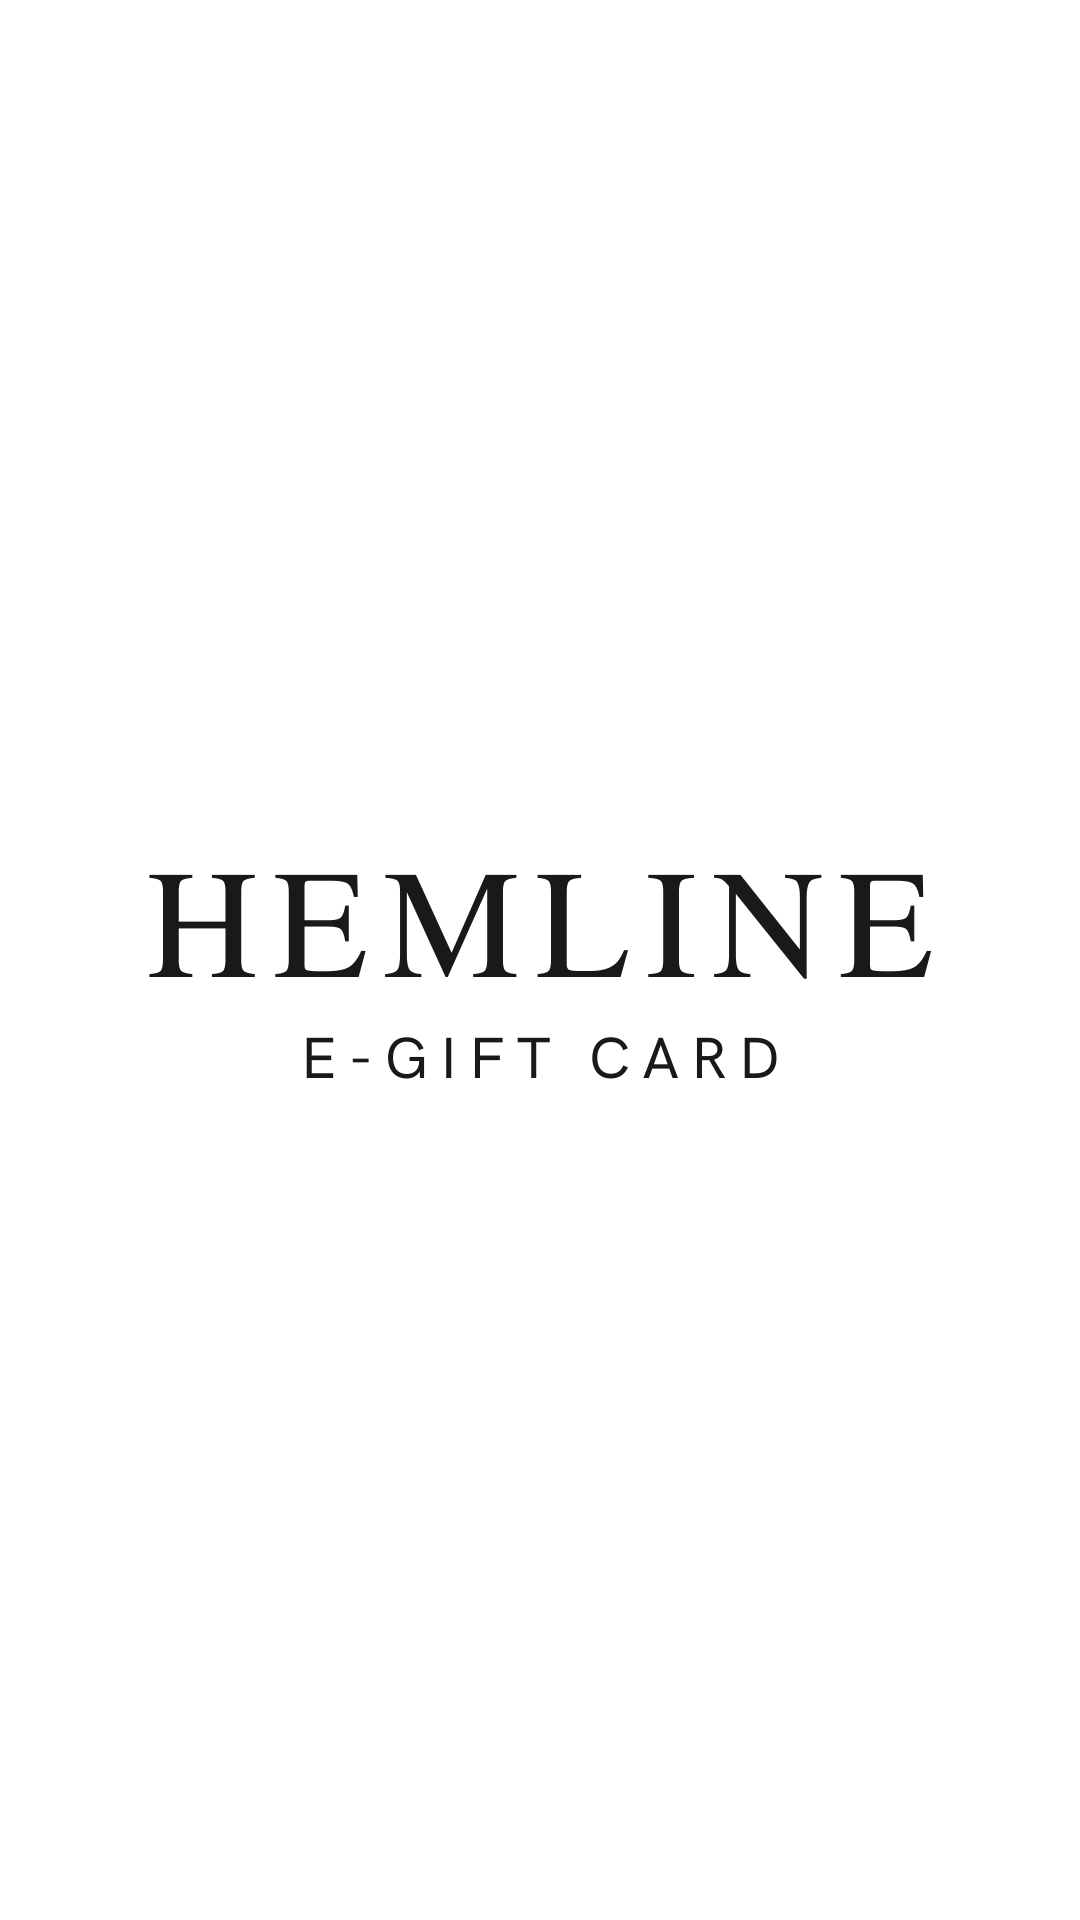 Hemline River Oaks E-Gift Card